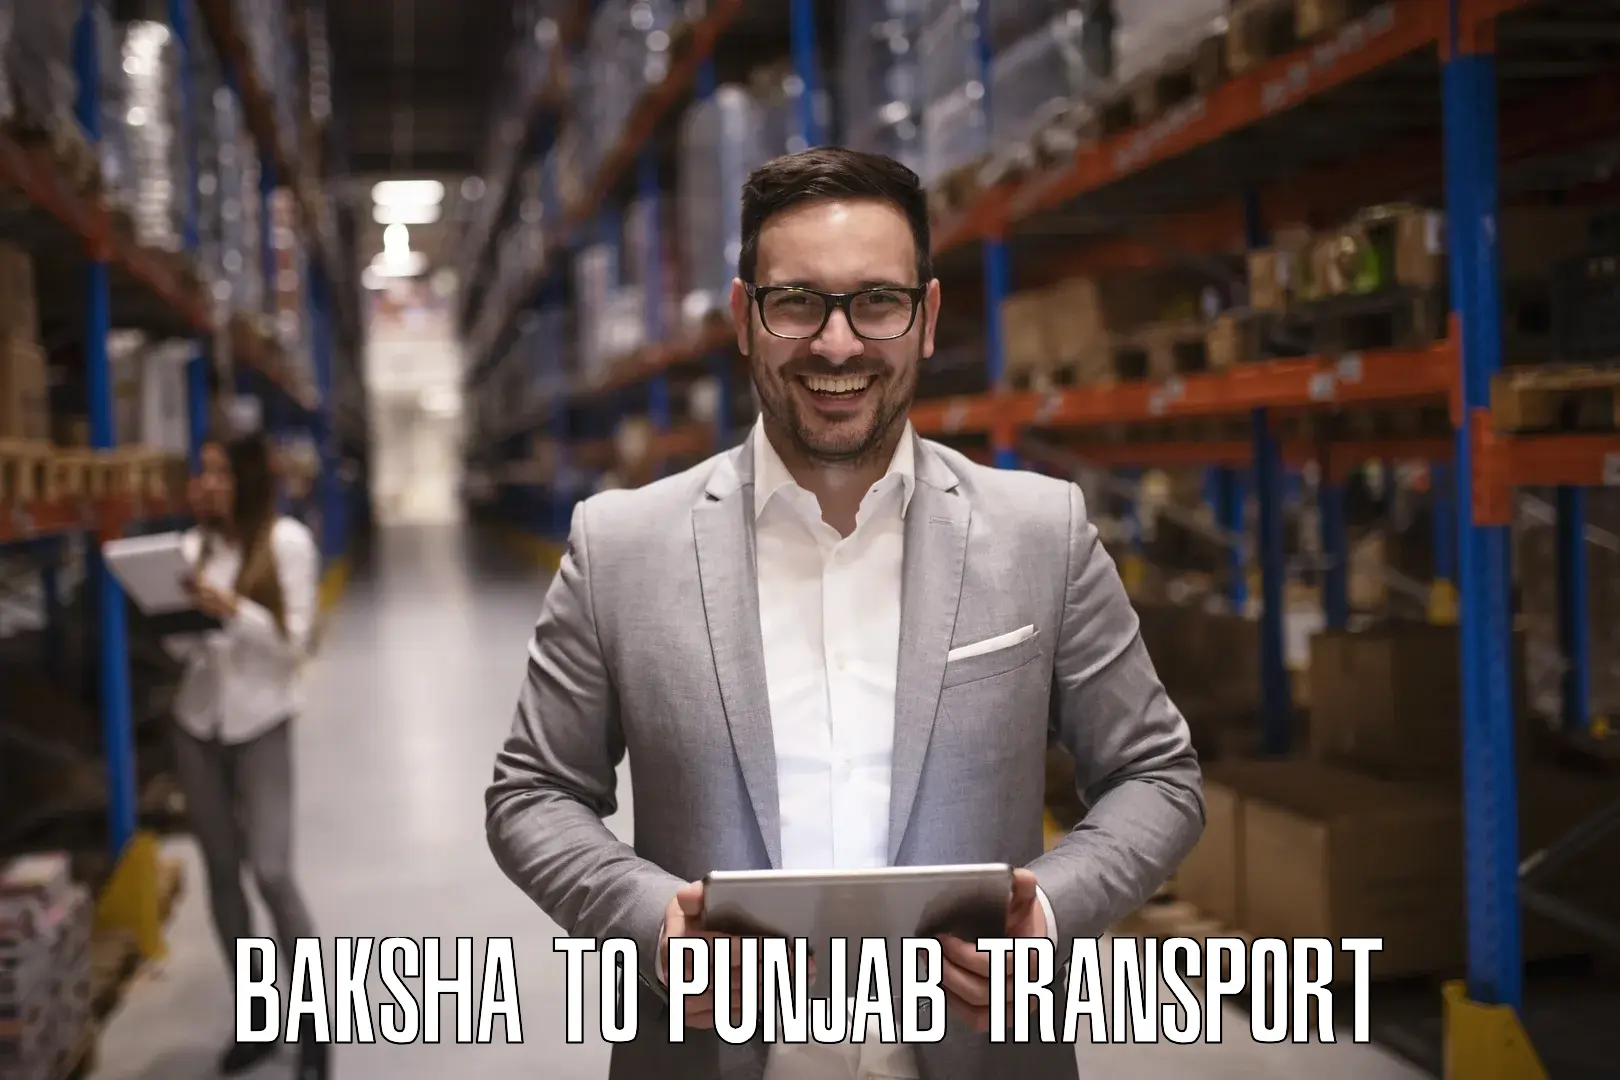 Parcel transport services Baksha to Punjab